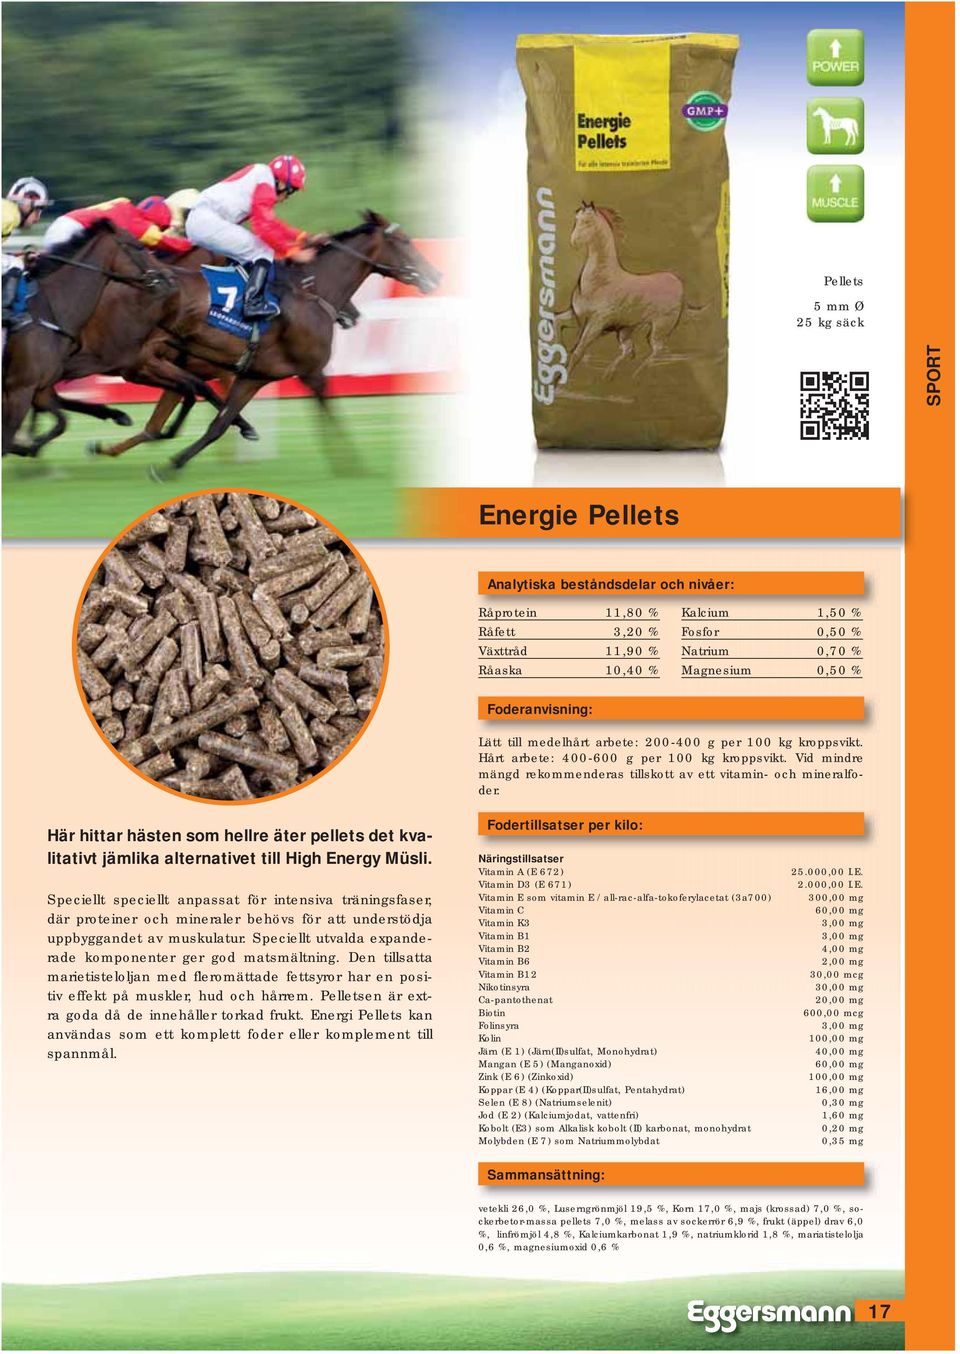 Här hittar hästen som hellre äter pellets det kvalitativt jämlika alternativet till High Energy Müsli.